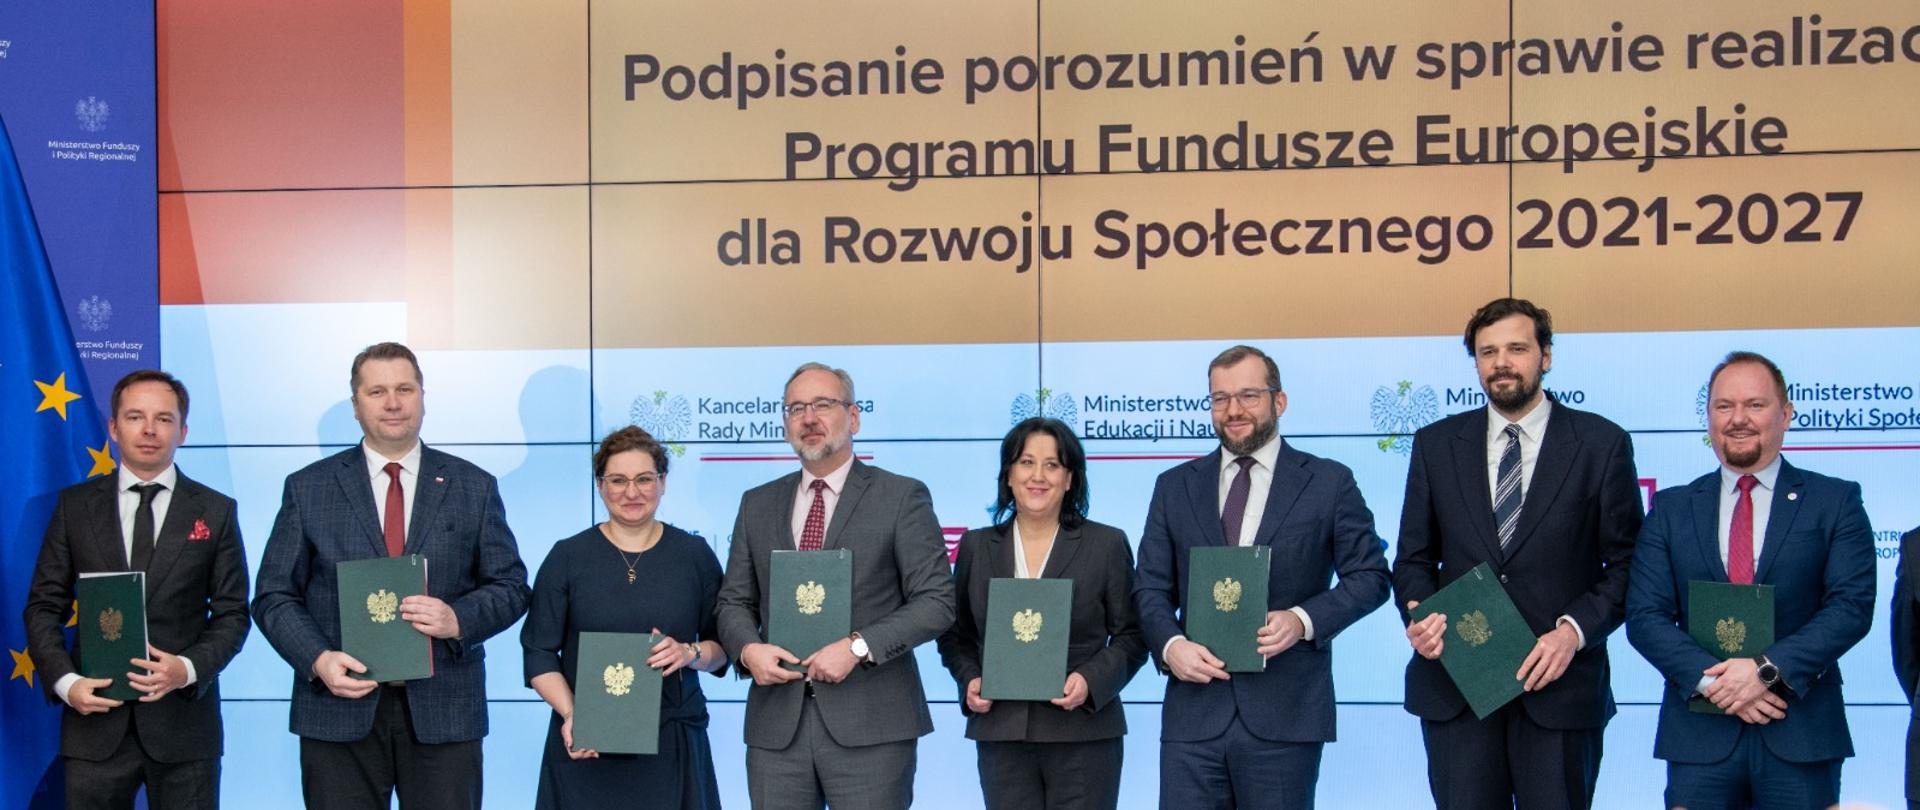 Minister funduszy i polityki regionalnej Grzegorz Puda wraz z przedstawicielami dziewięciu instytucji pośredniczących uczestniczących w systemie wdrażania Funduszy Europejskich dla Rozwoju Społecznego 2021-2027 podpisali dziś porozumienia w tej sprawie.